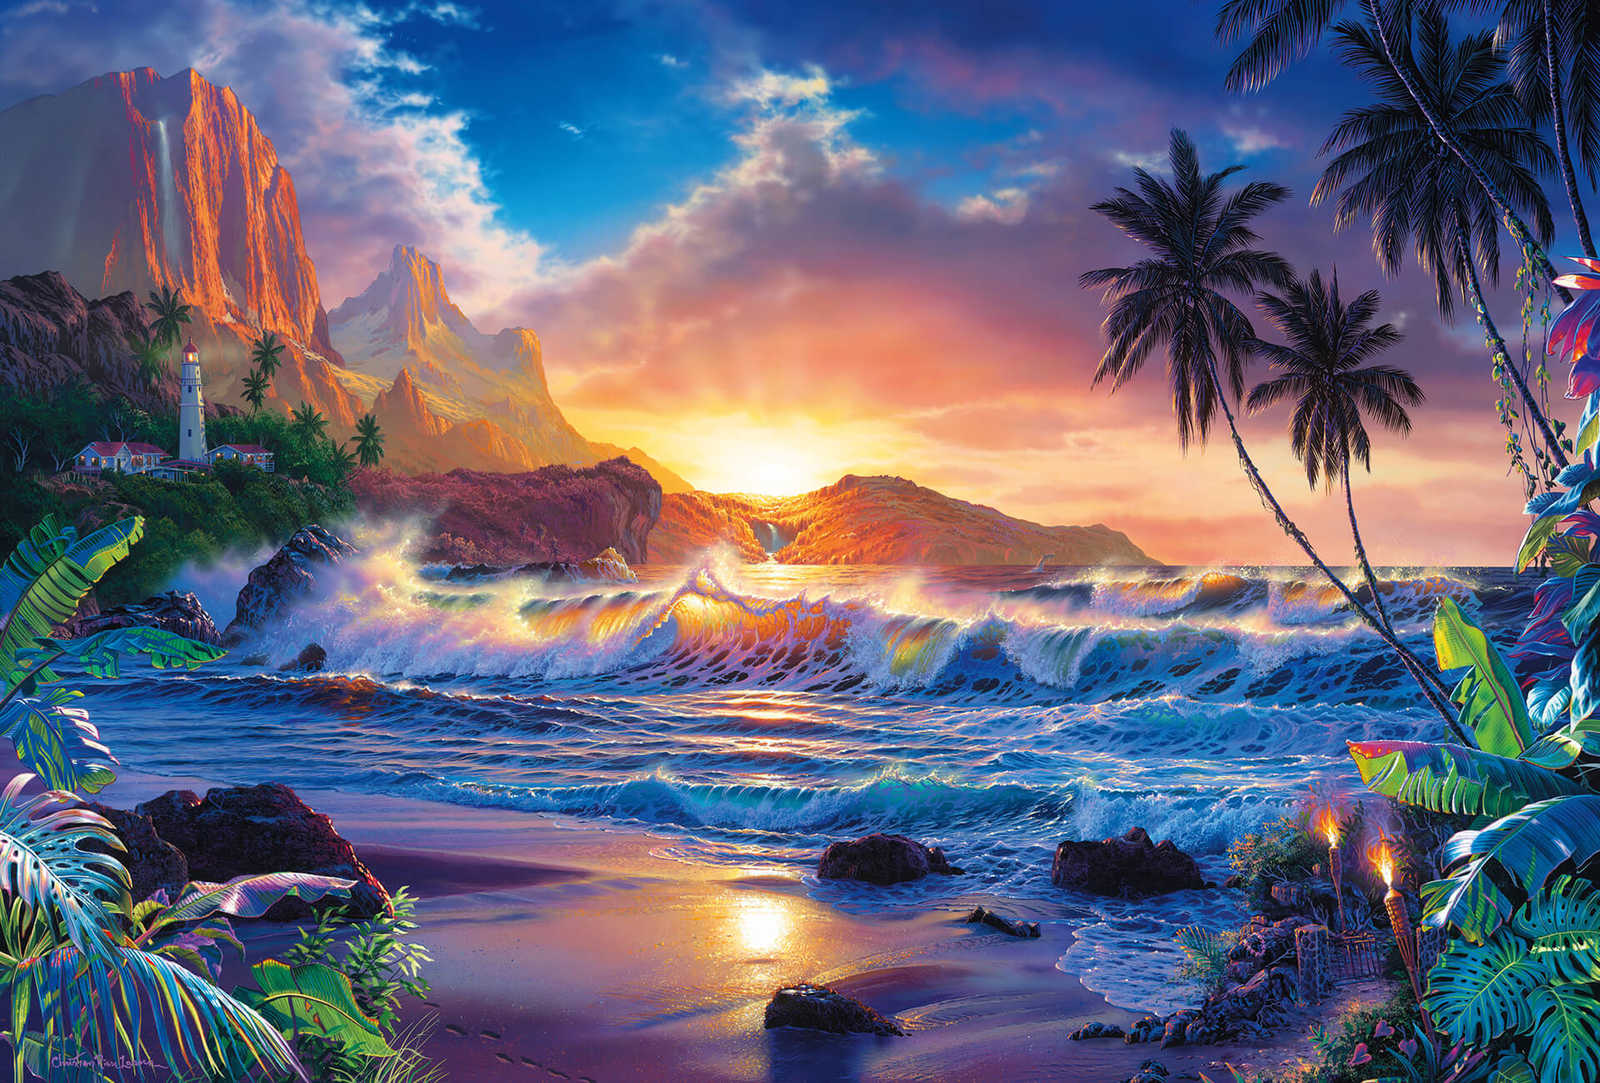 Papel pintado Paisaje paradisíaco mar, playa y acantilados
